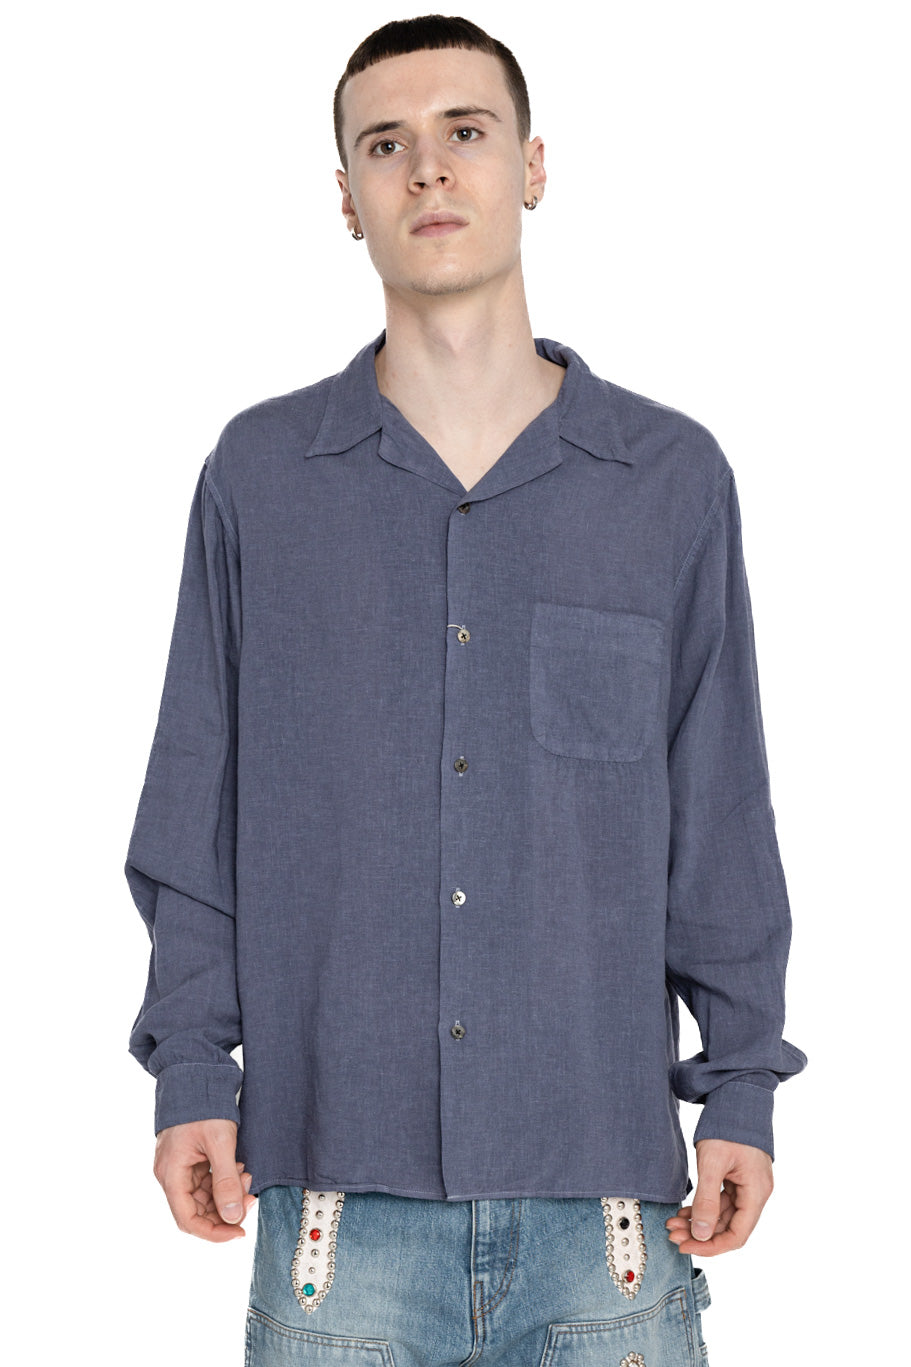 Soft Linen Open Collar Shirt - Grey Purple